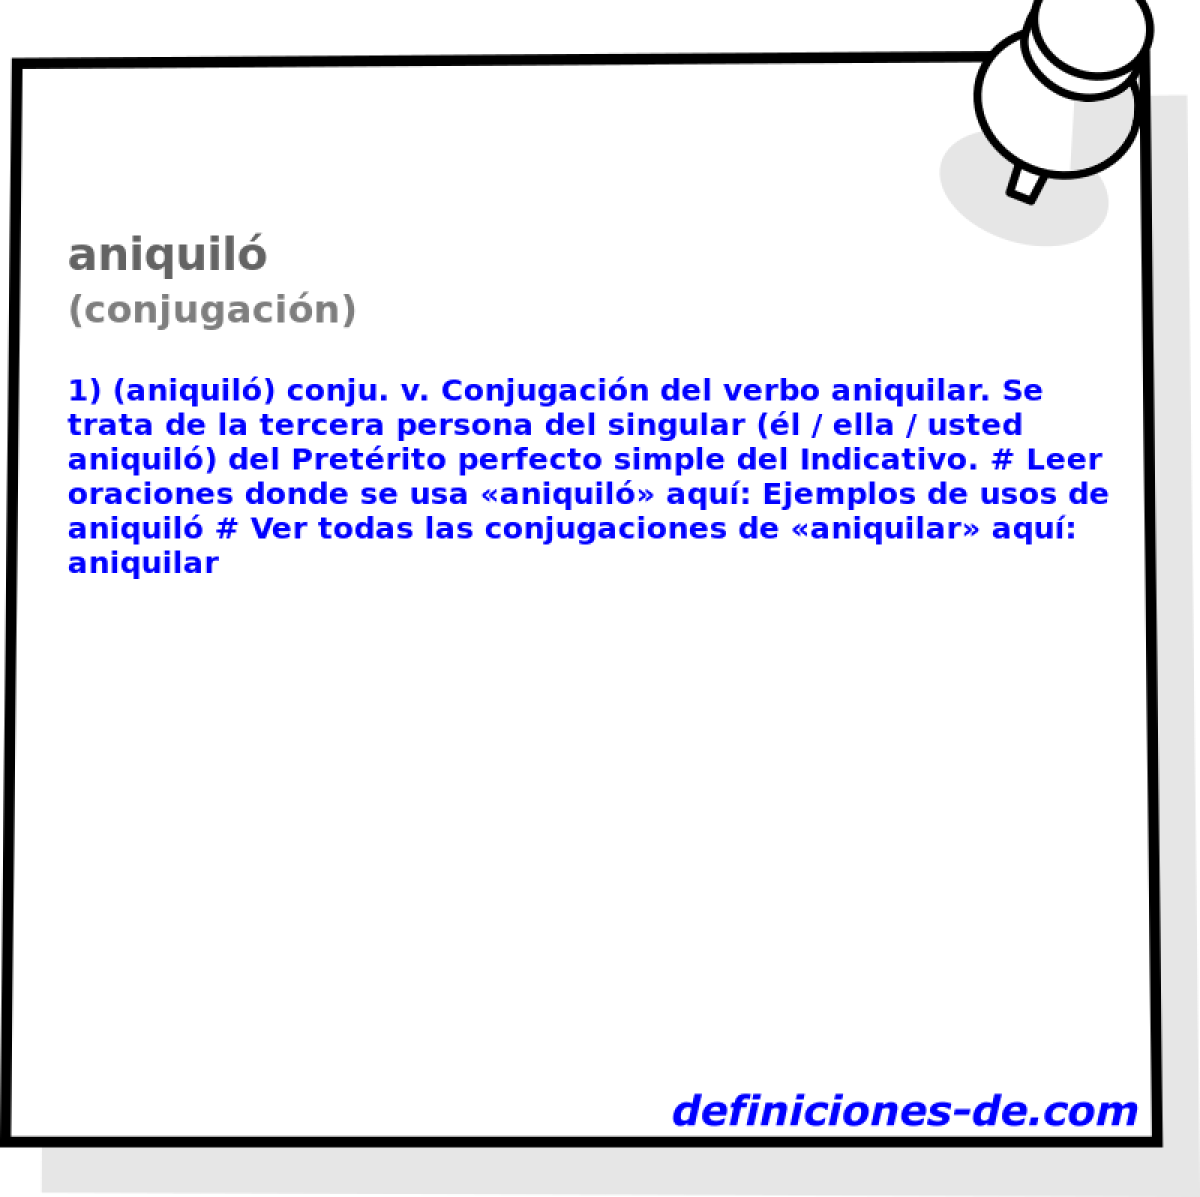 aniquil (conjugacin)